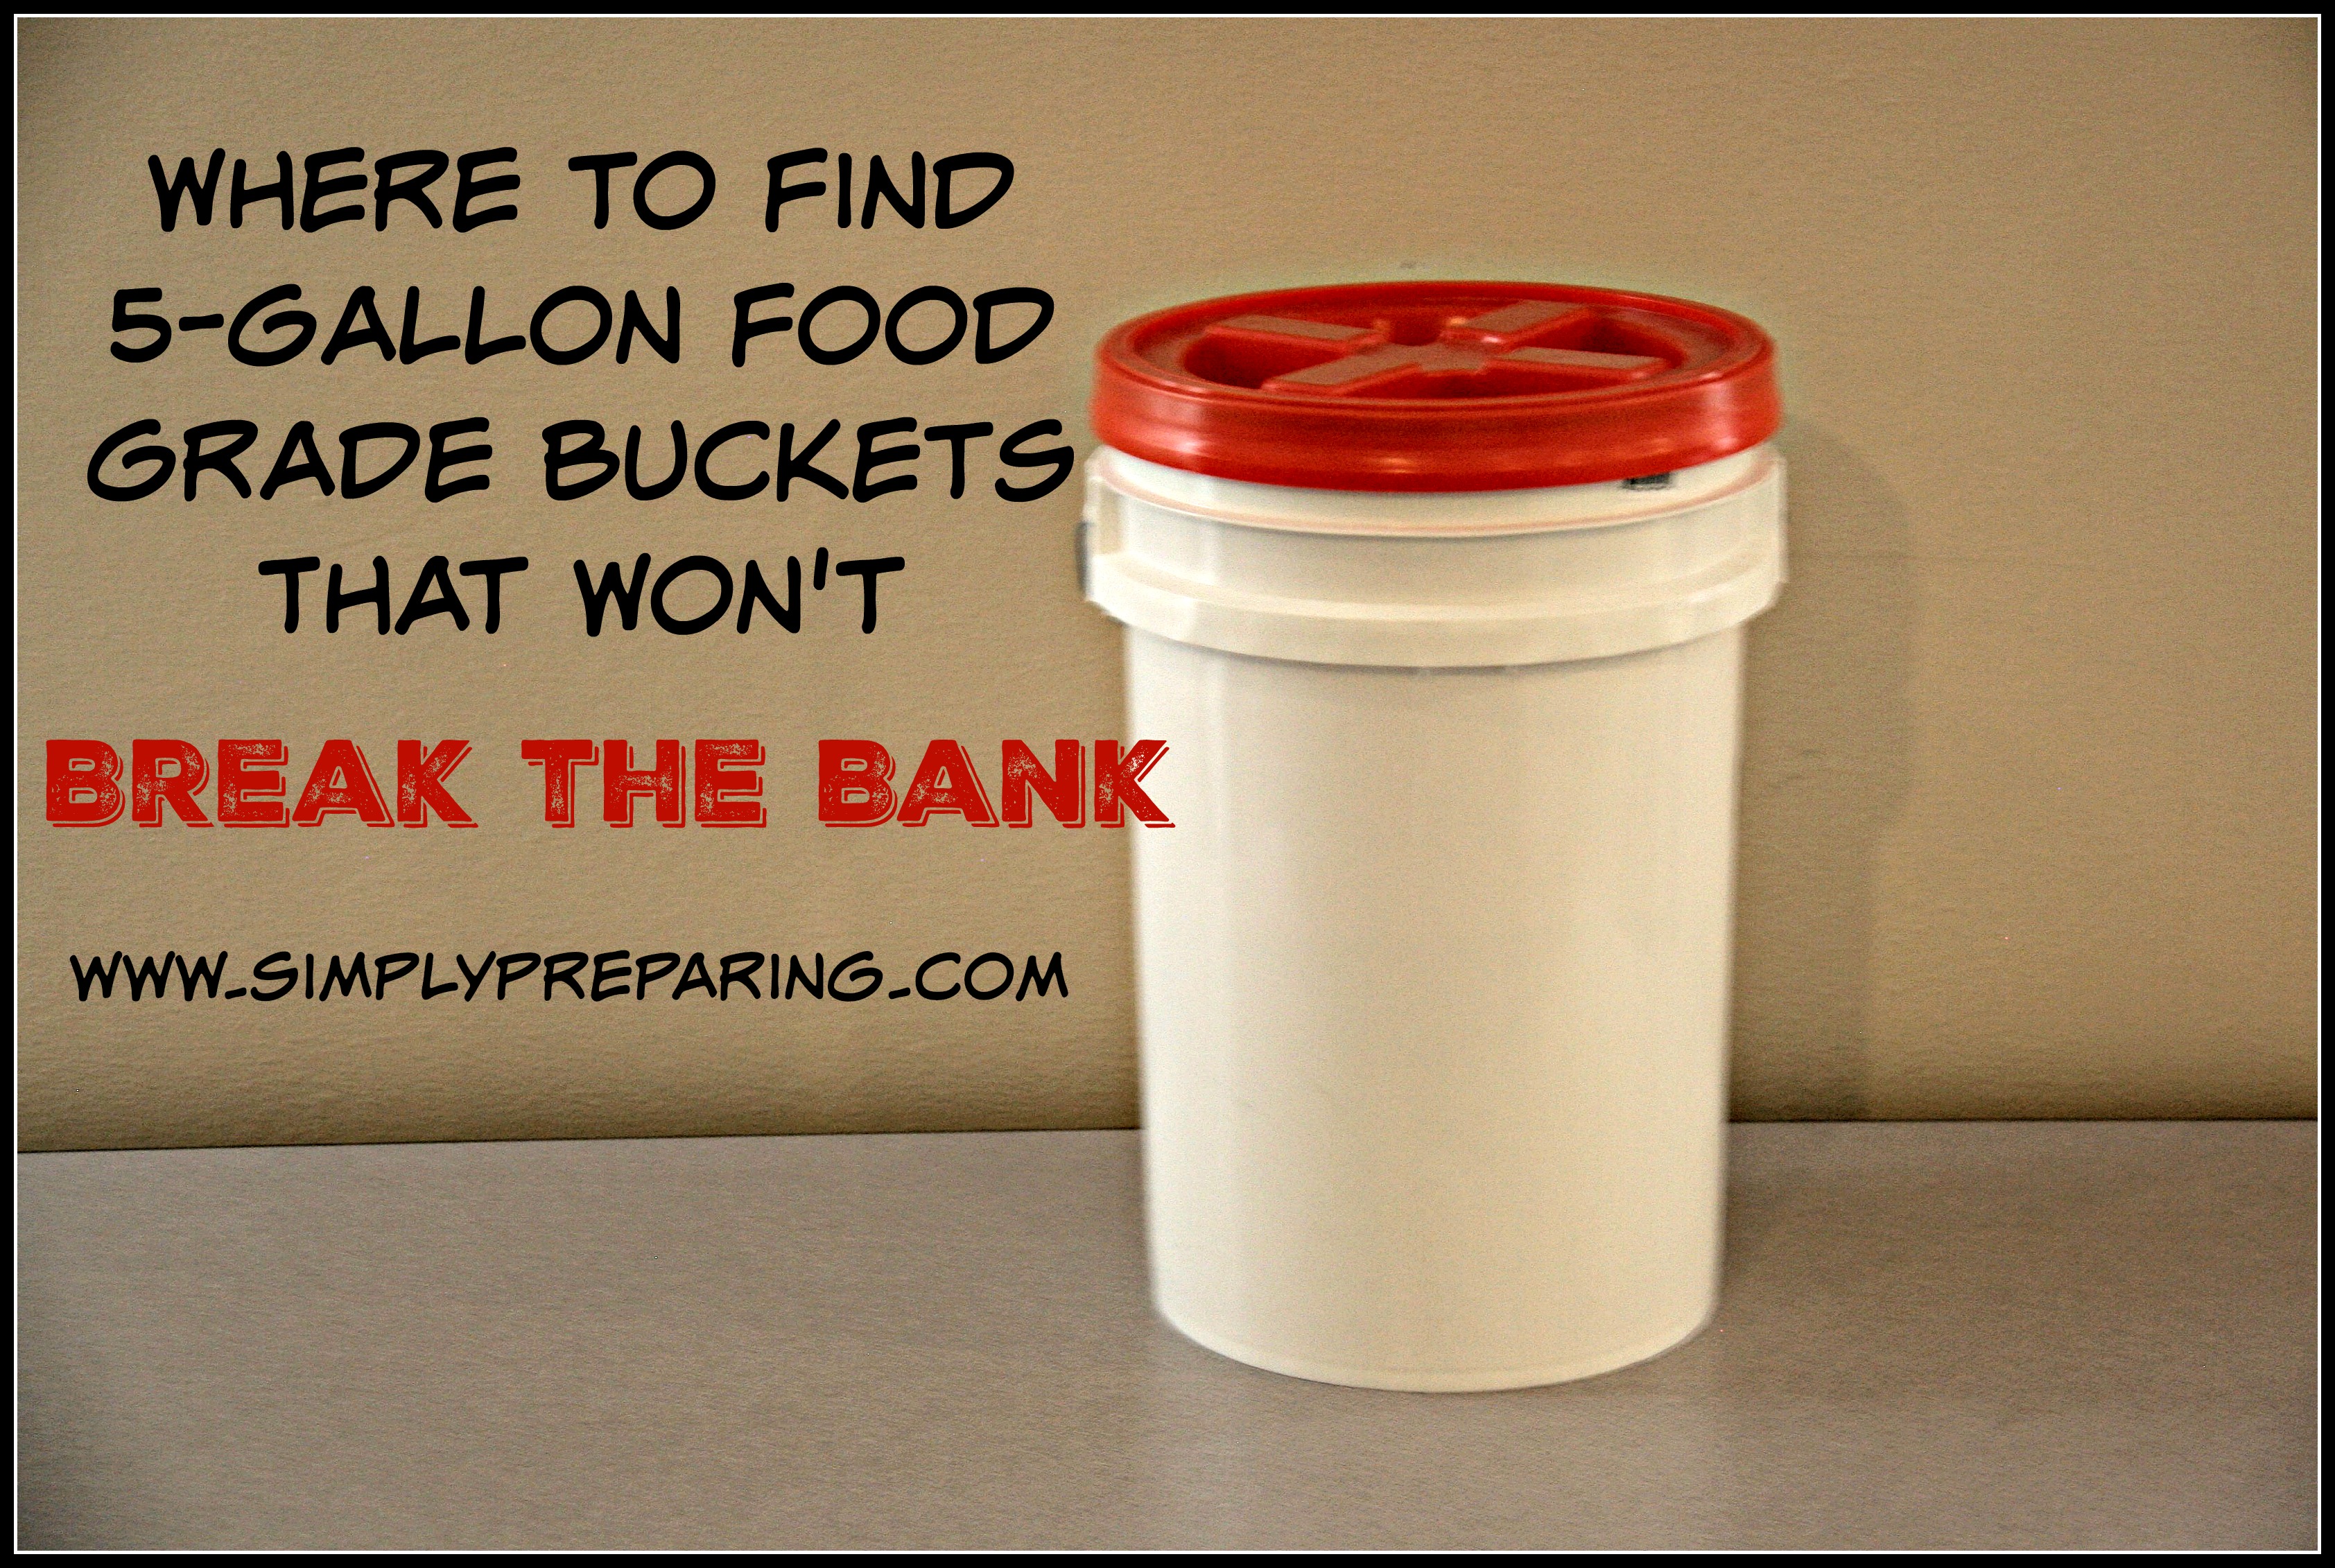 5-Gallon Food Grade Buckets - Simply 